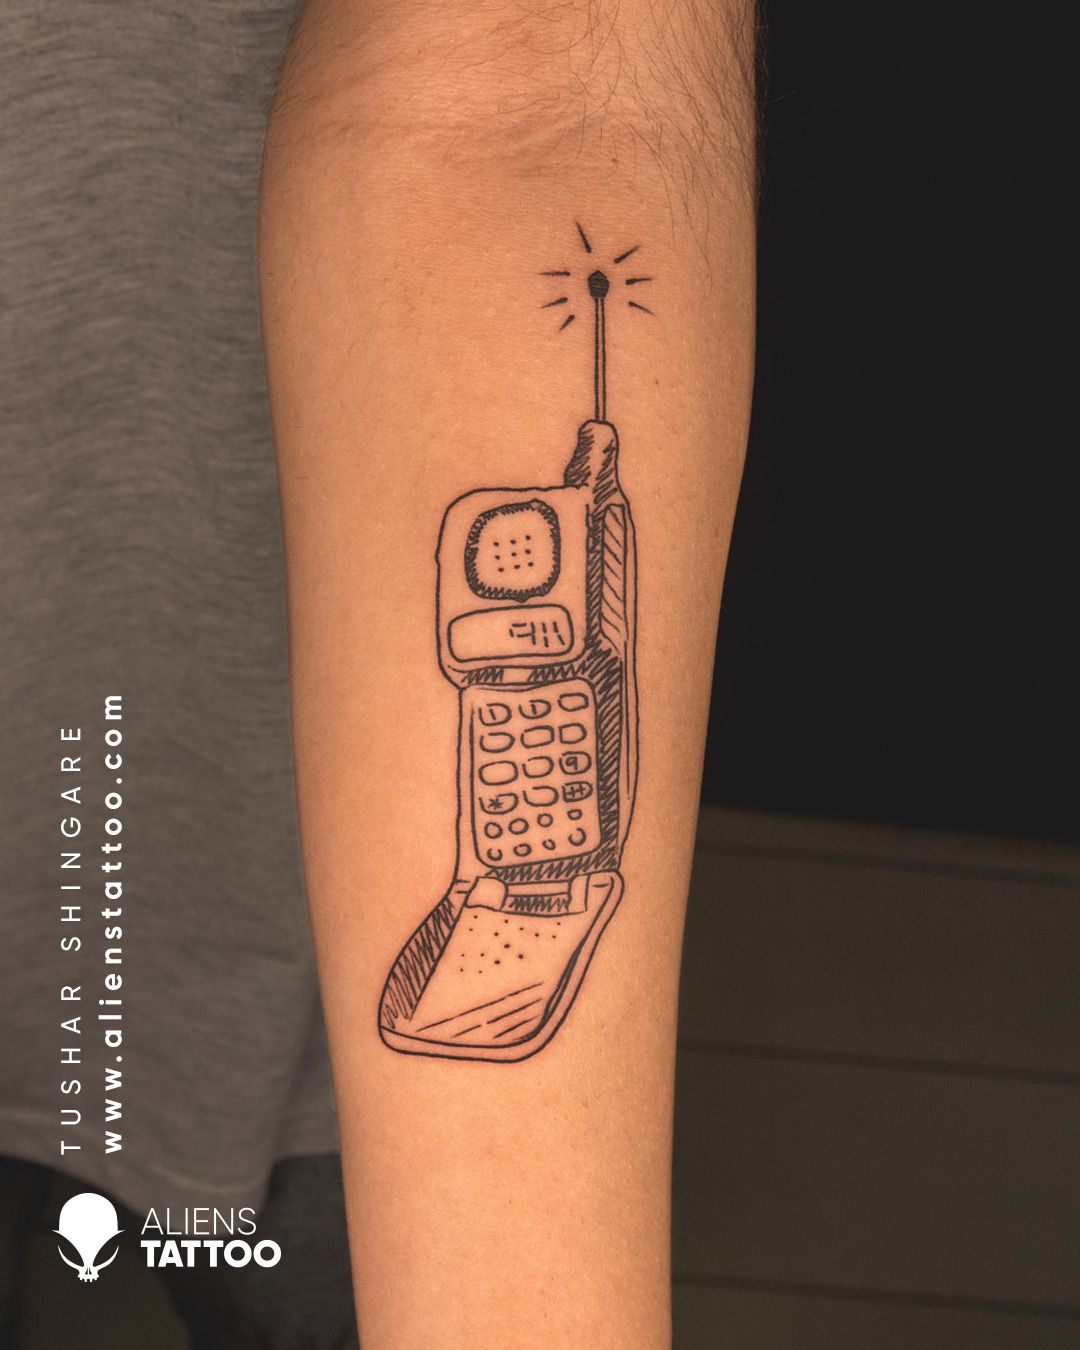 Chardi Kalan | Tattoo designs, Side wrist tattoos, Tattoos